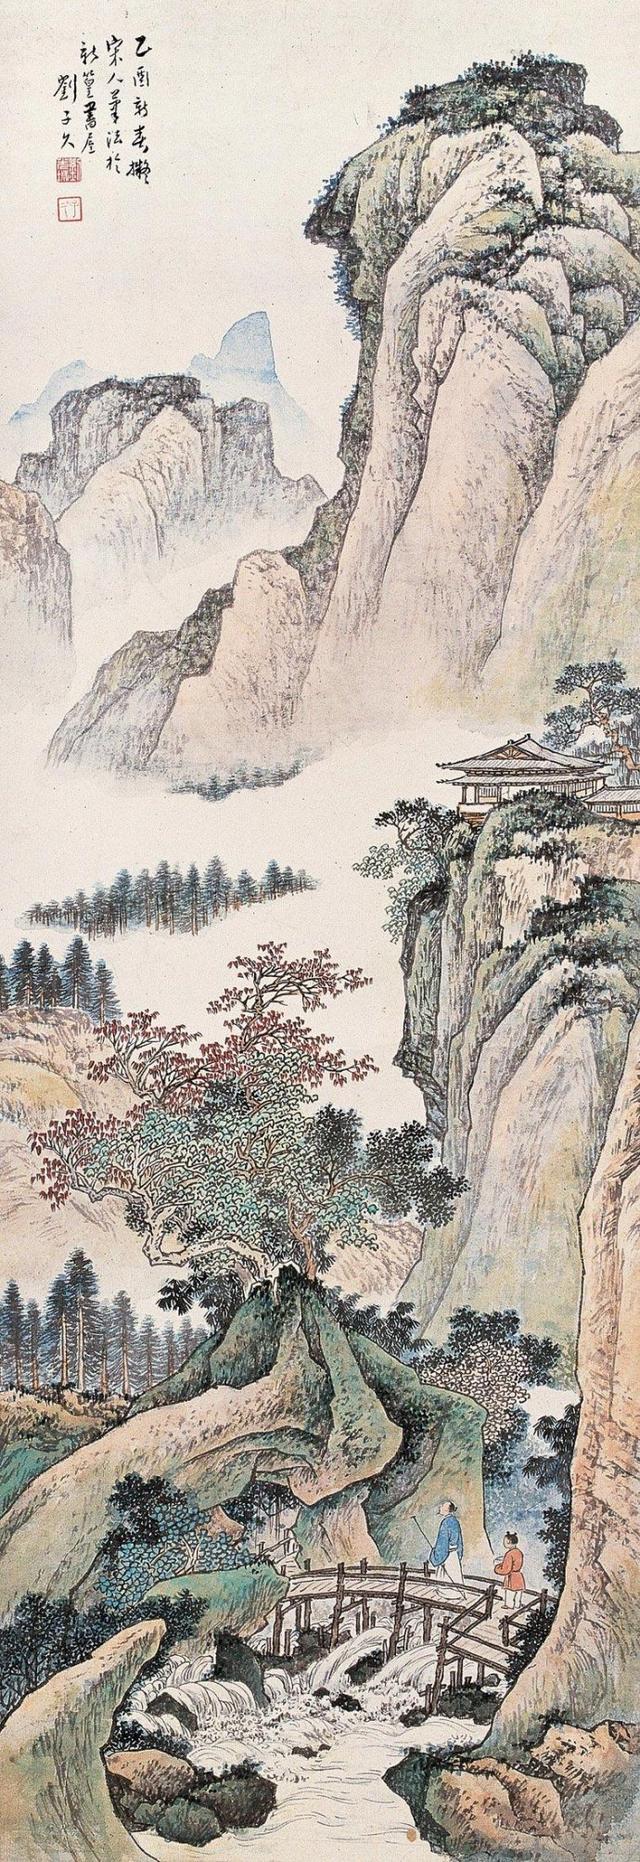 国画大师刘子久传统山水作品欣赏沉静深厚自然流畅